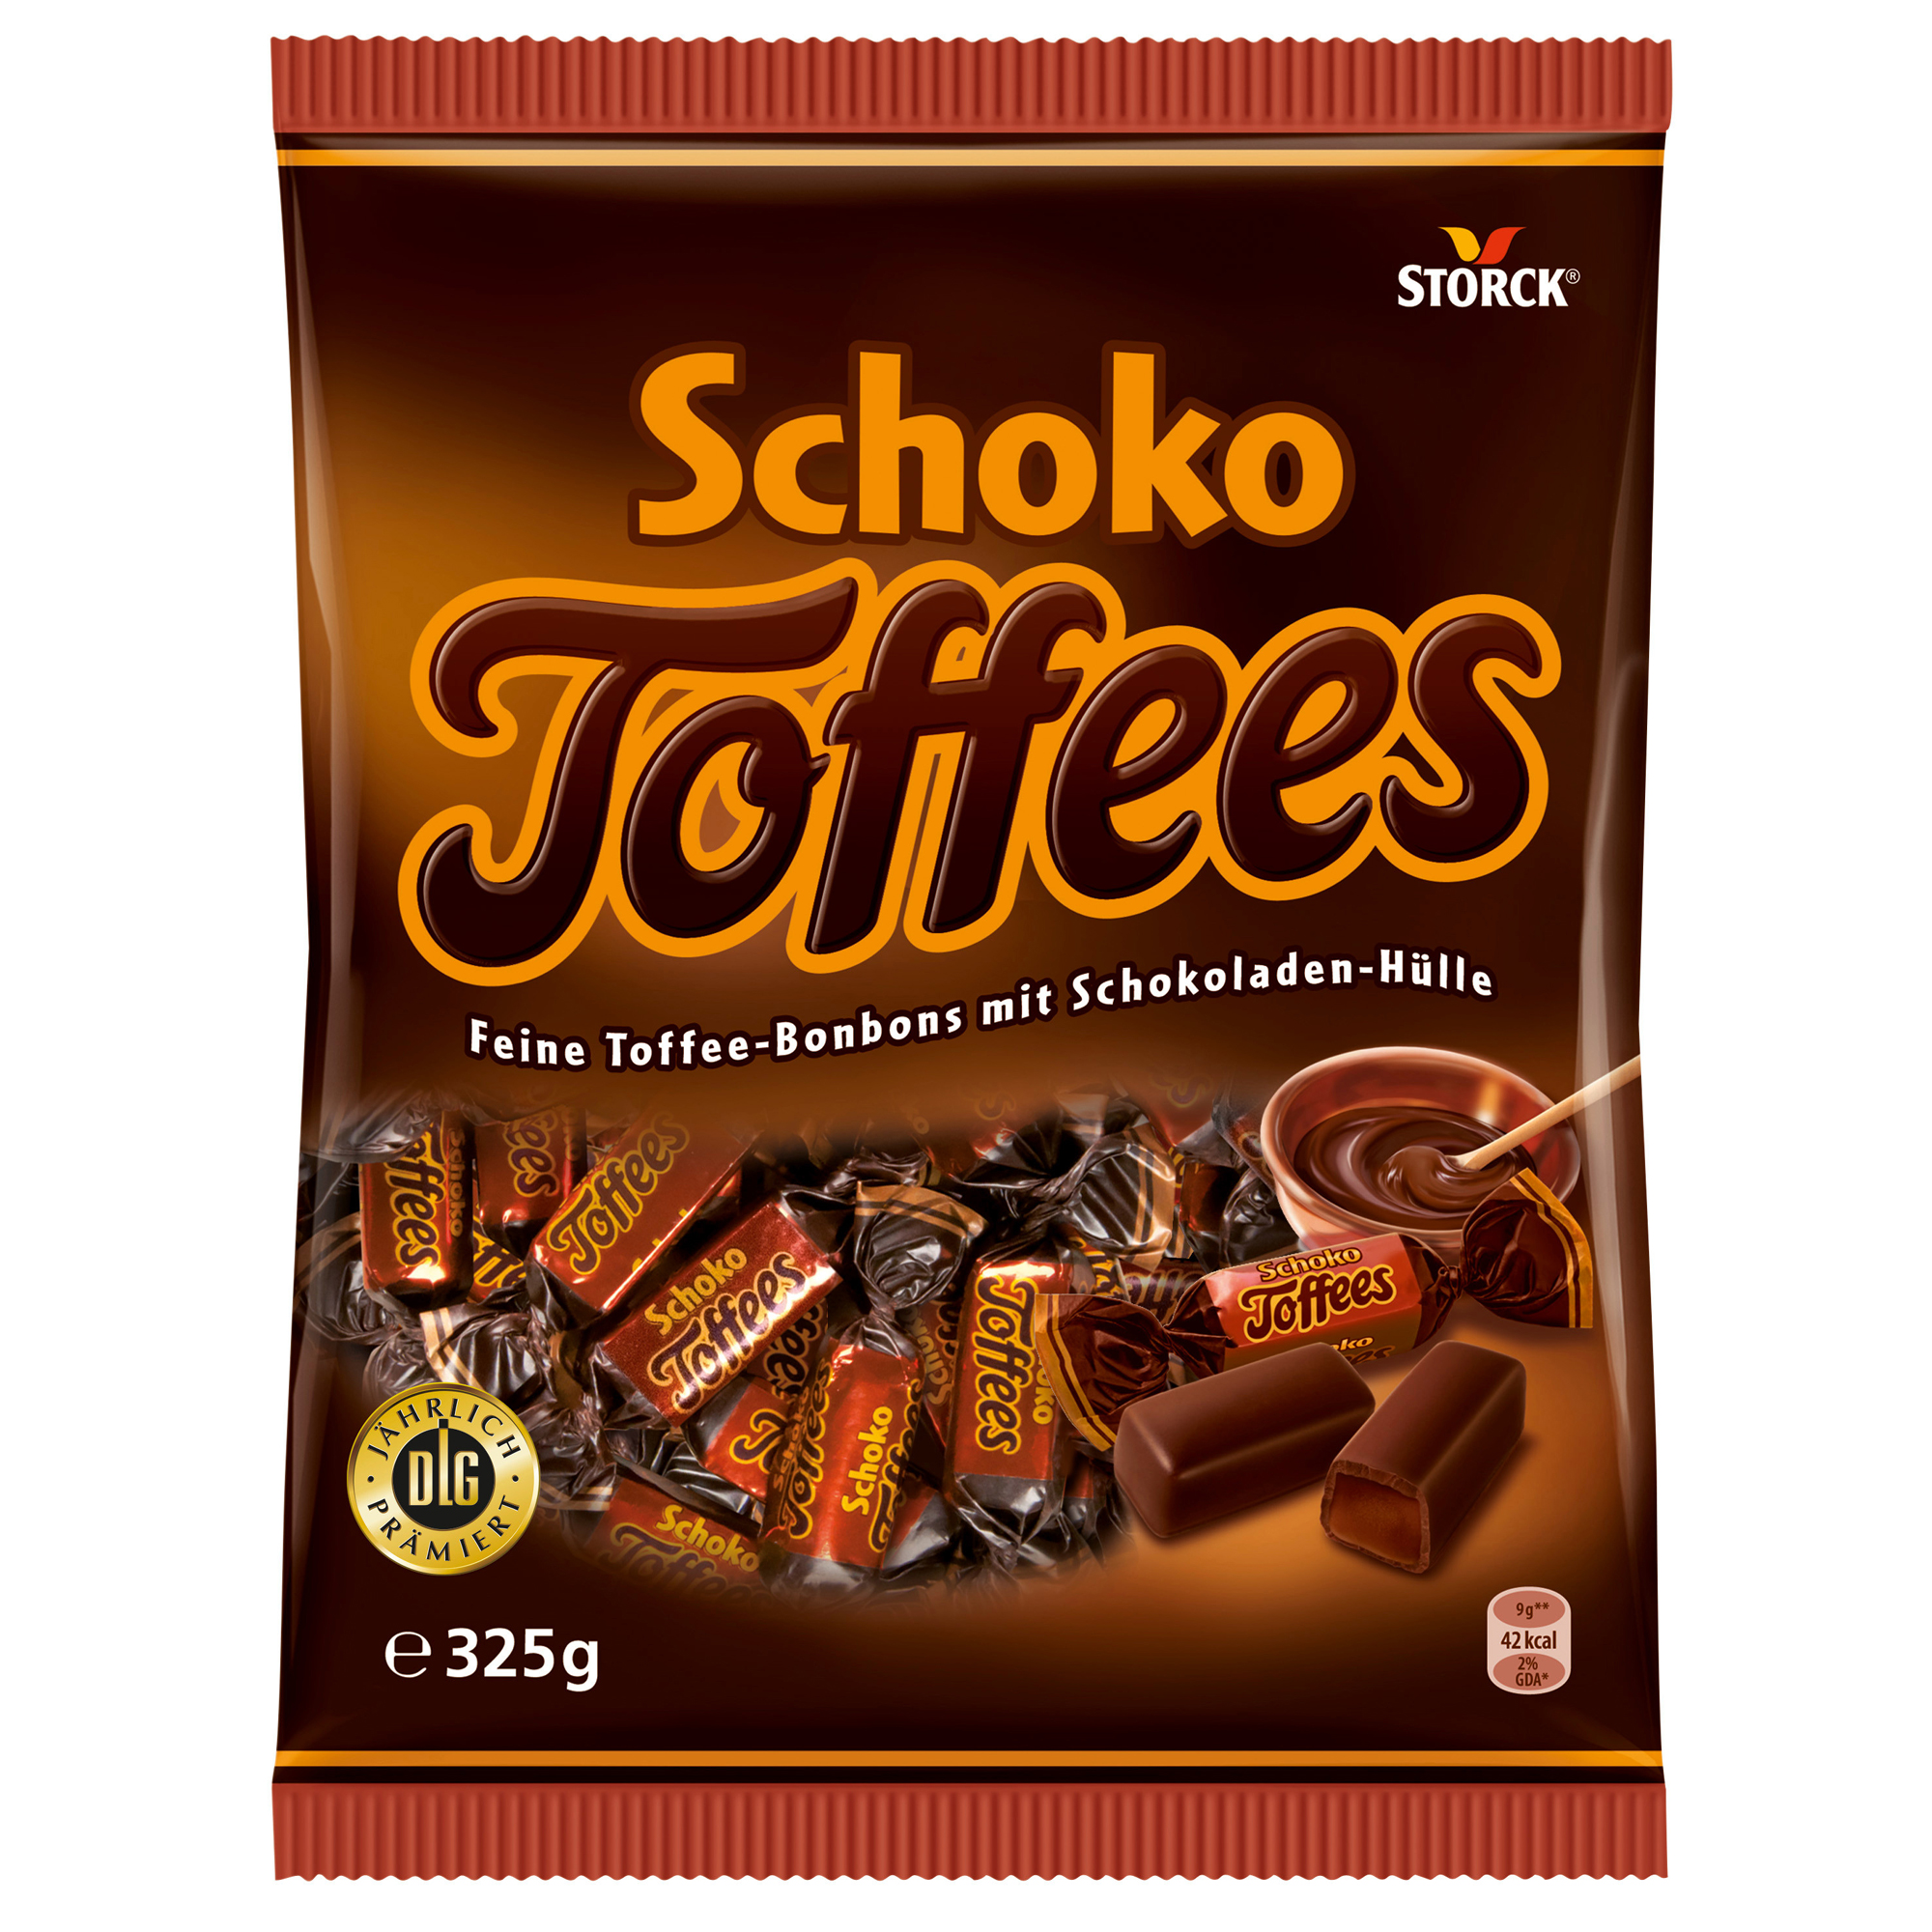 Storck Schoko Toffees 325g | Online kaufen im World of Sweets Shop